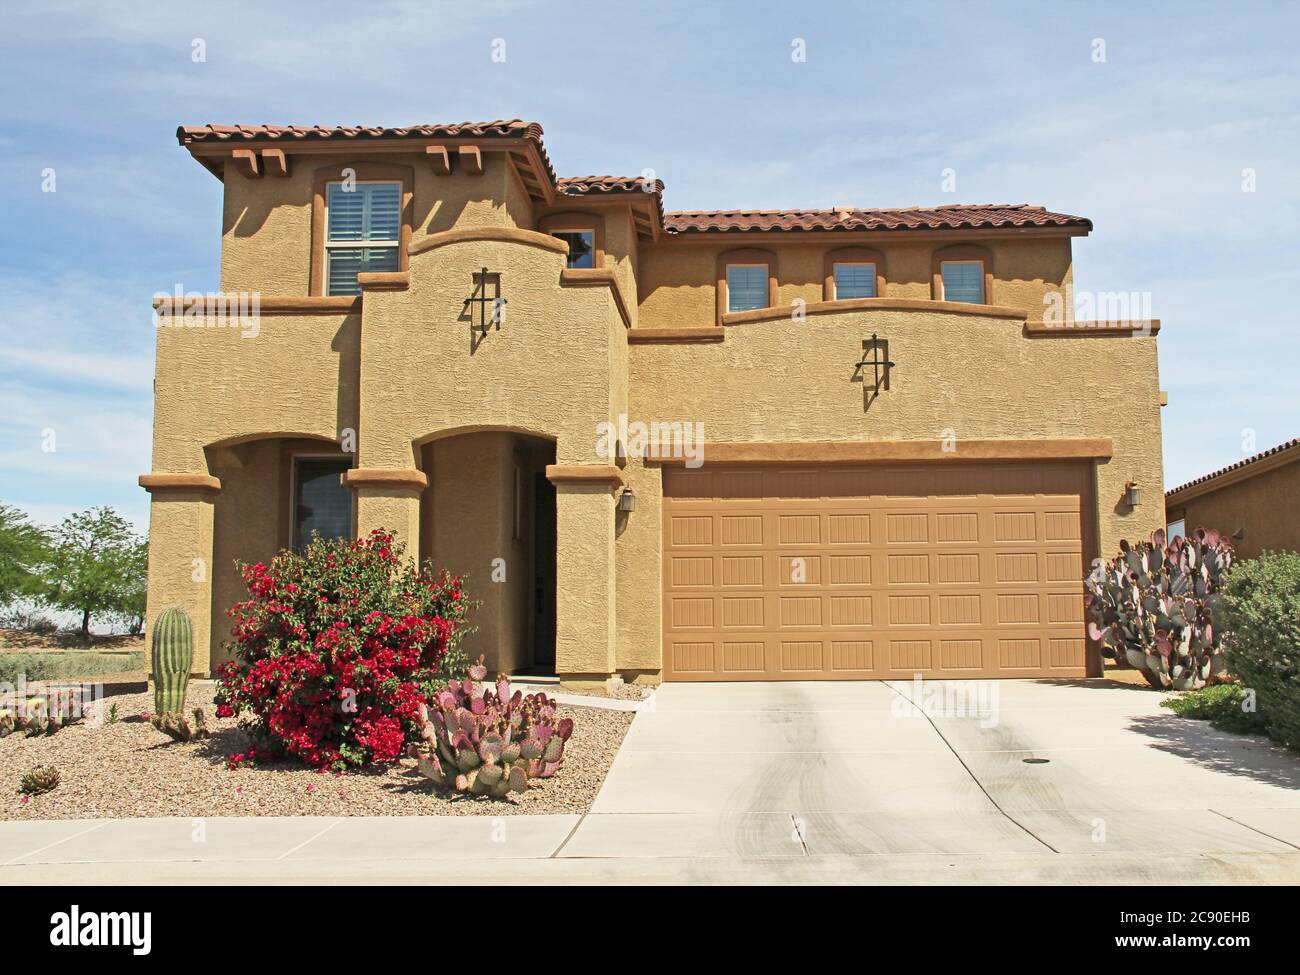 Nuova casa di stucco a due piani, marrone e beige a Tucson, Arizona, Stati Uniti d'America, con un bel cielo blu e un paesaggio. Foto Stock